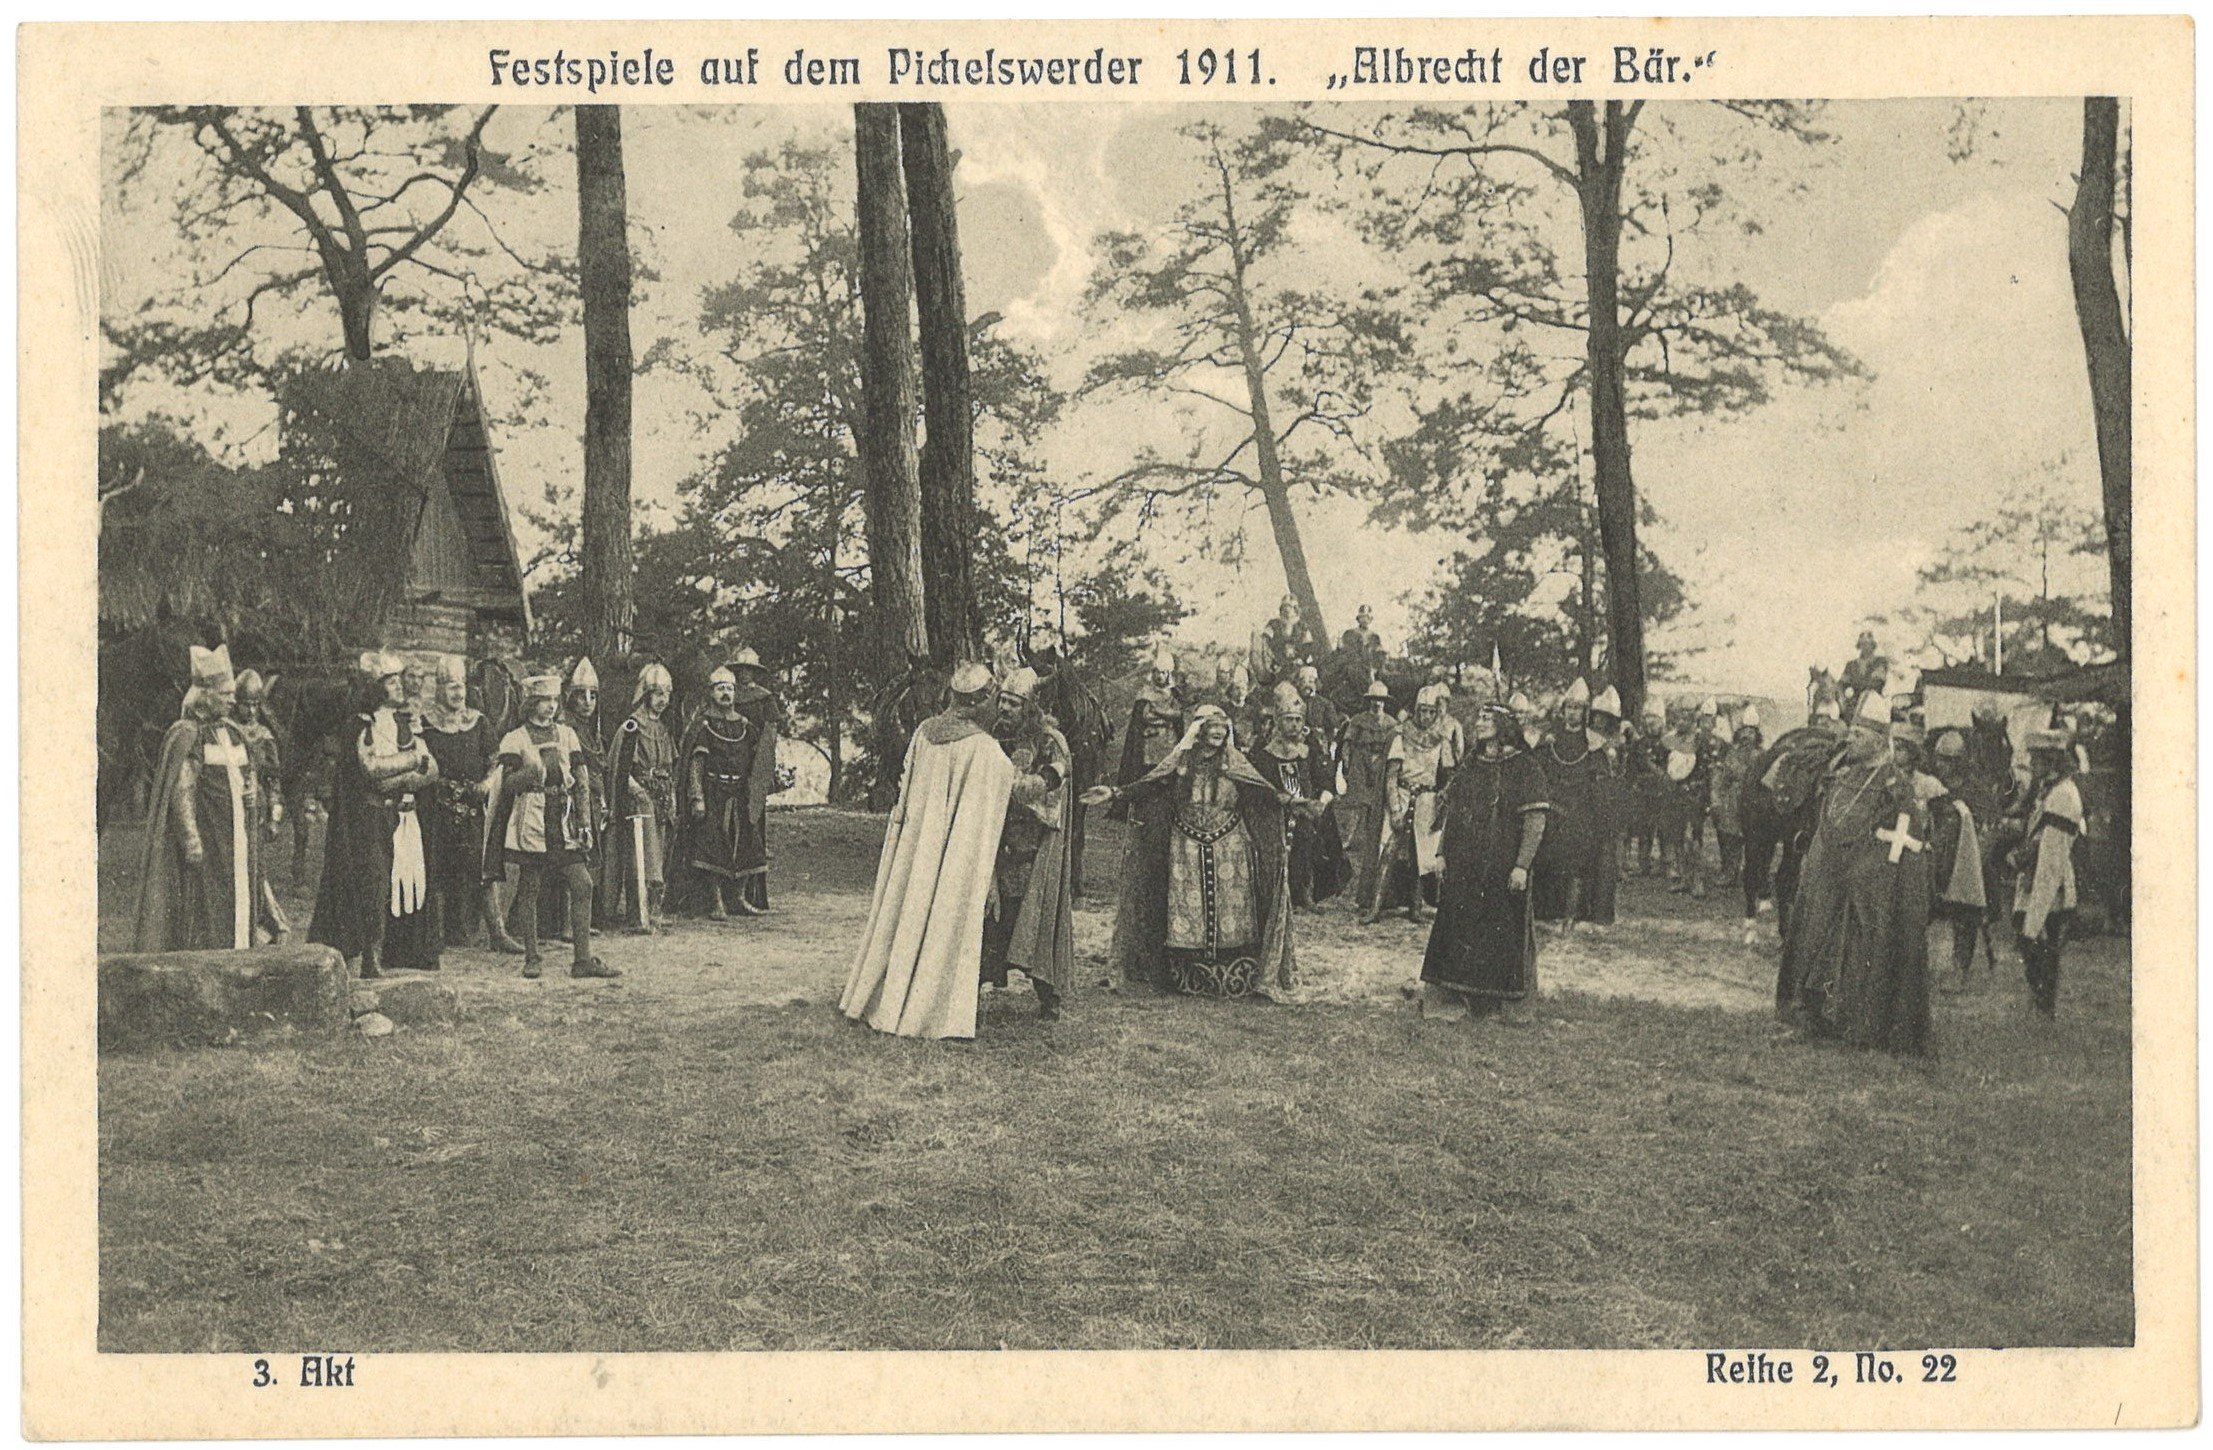 Berlin-Spandau: Festspiele auf dem Pichelswerder 1911. "Albrecht der Bär", 3. Akt (Landesgeschichtliche Vereinigung für die Mark Brandenburg e.V. CC BY)